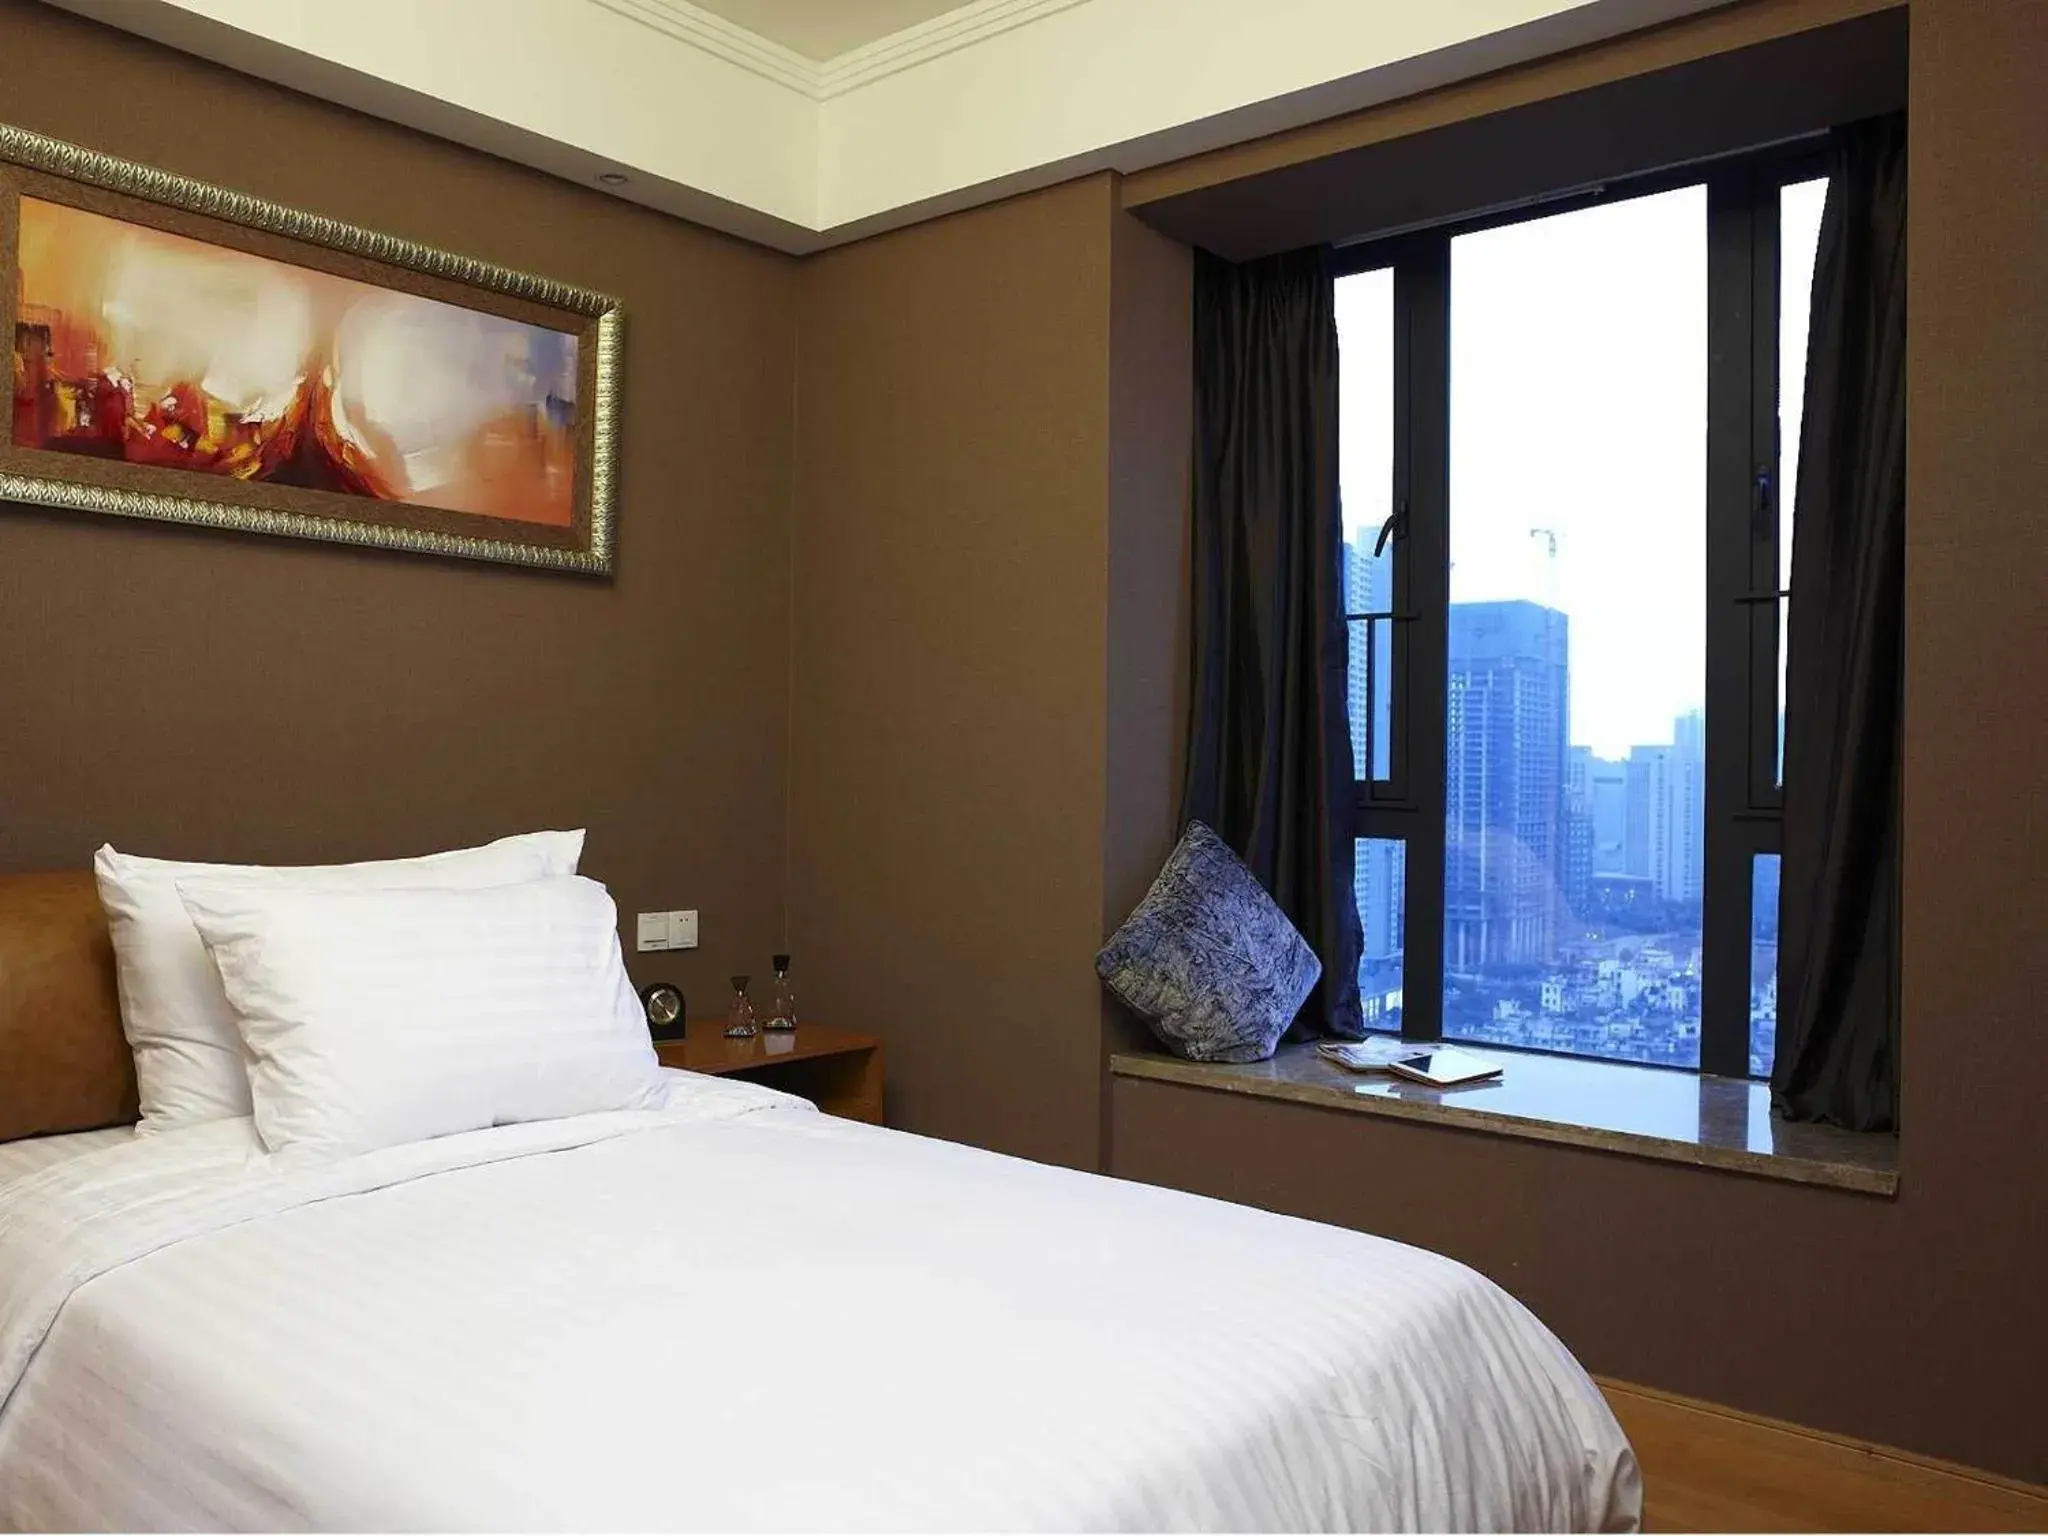 Bed in Dan Executive Hotel Apartment Zhujiang New Town